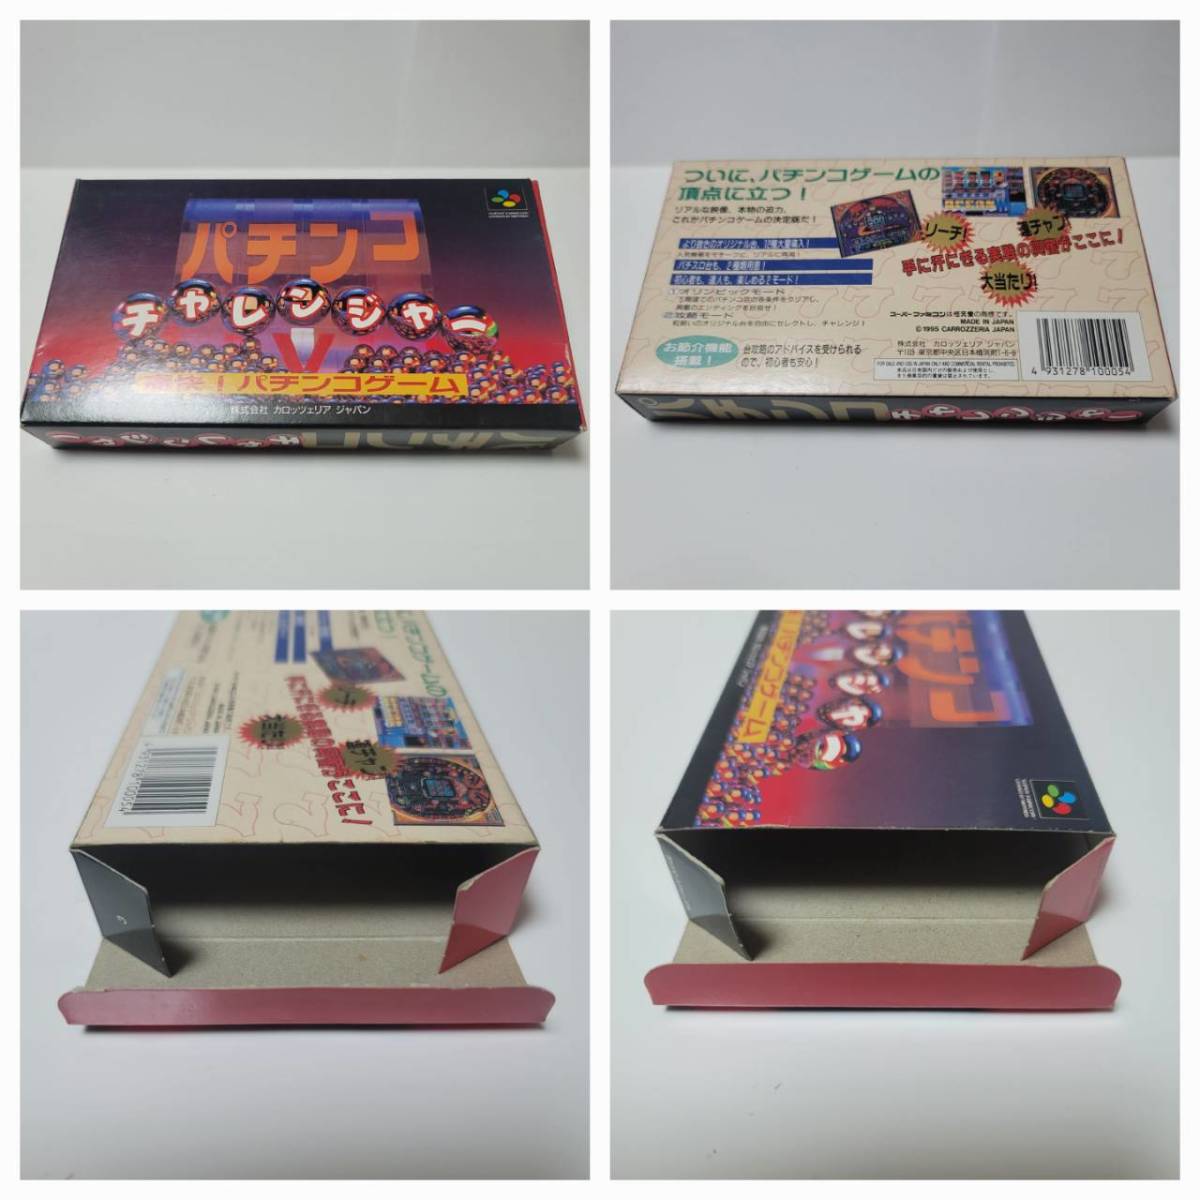 [ редкий ] патинко Challenger коробка инструкция открытка комплект Super Famicom SFC редкость очень редкий 